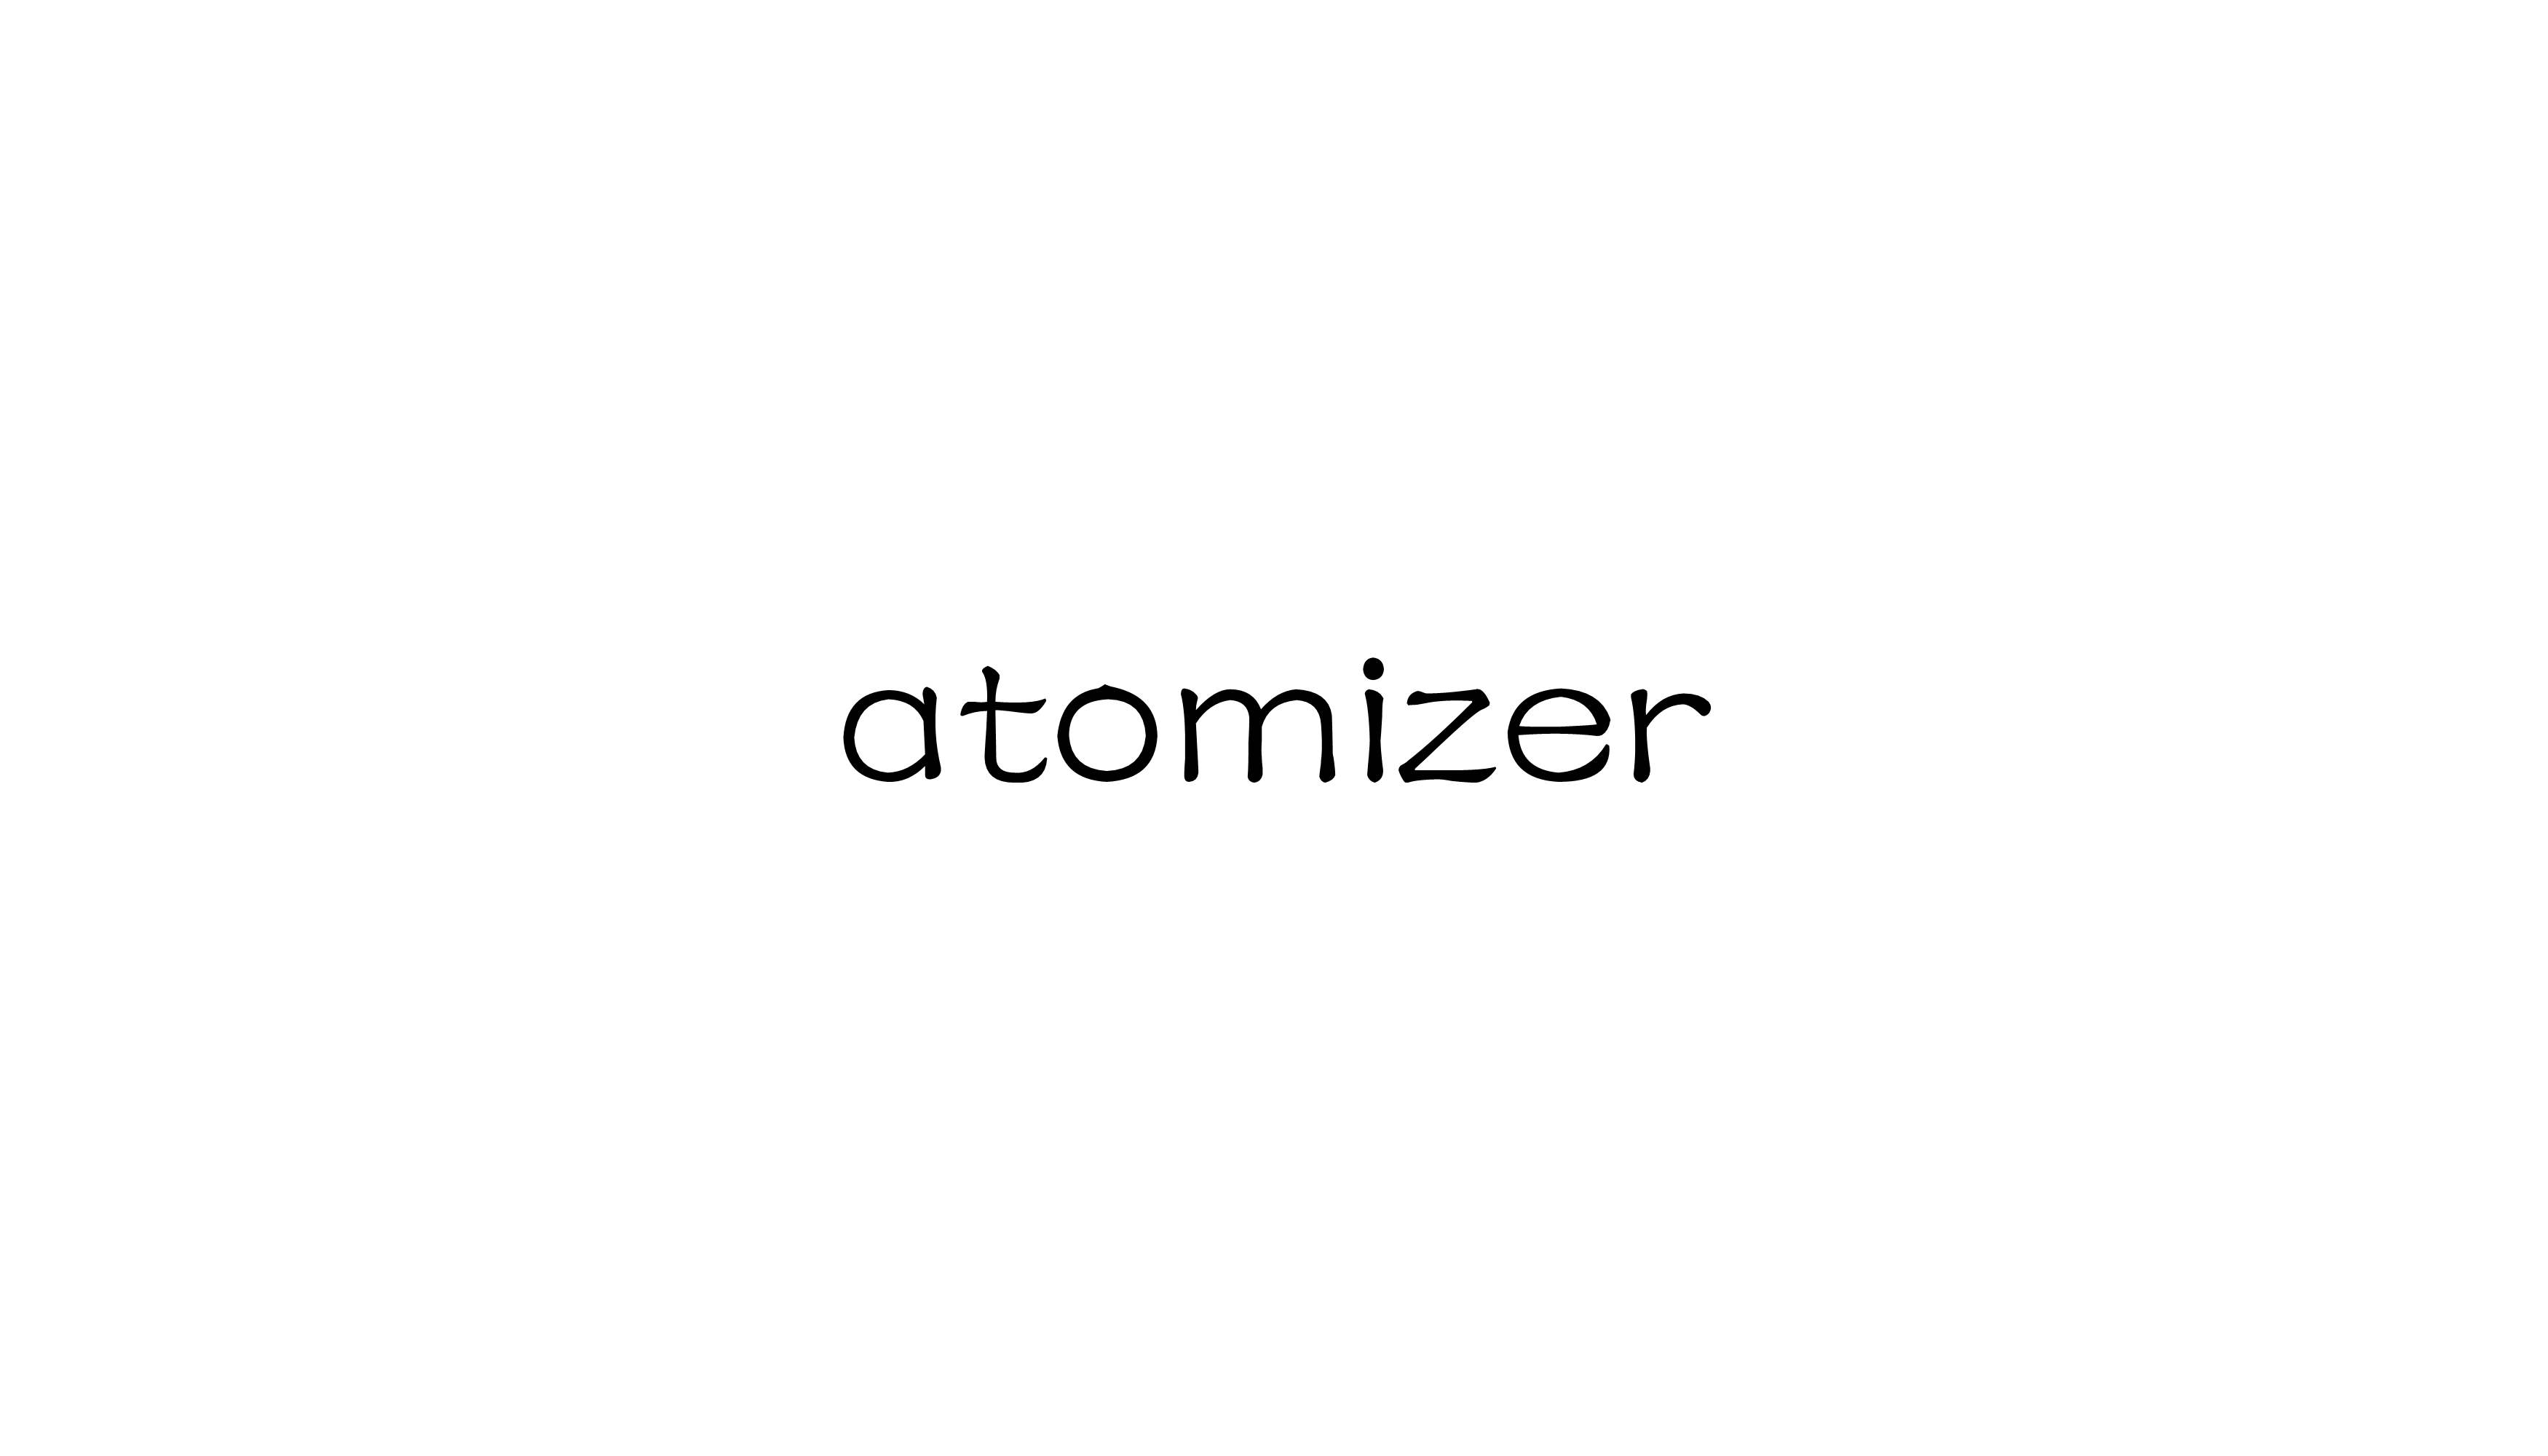 atomizer